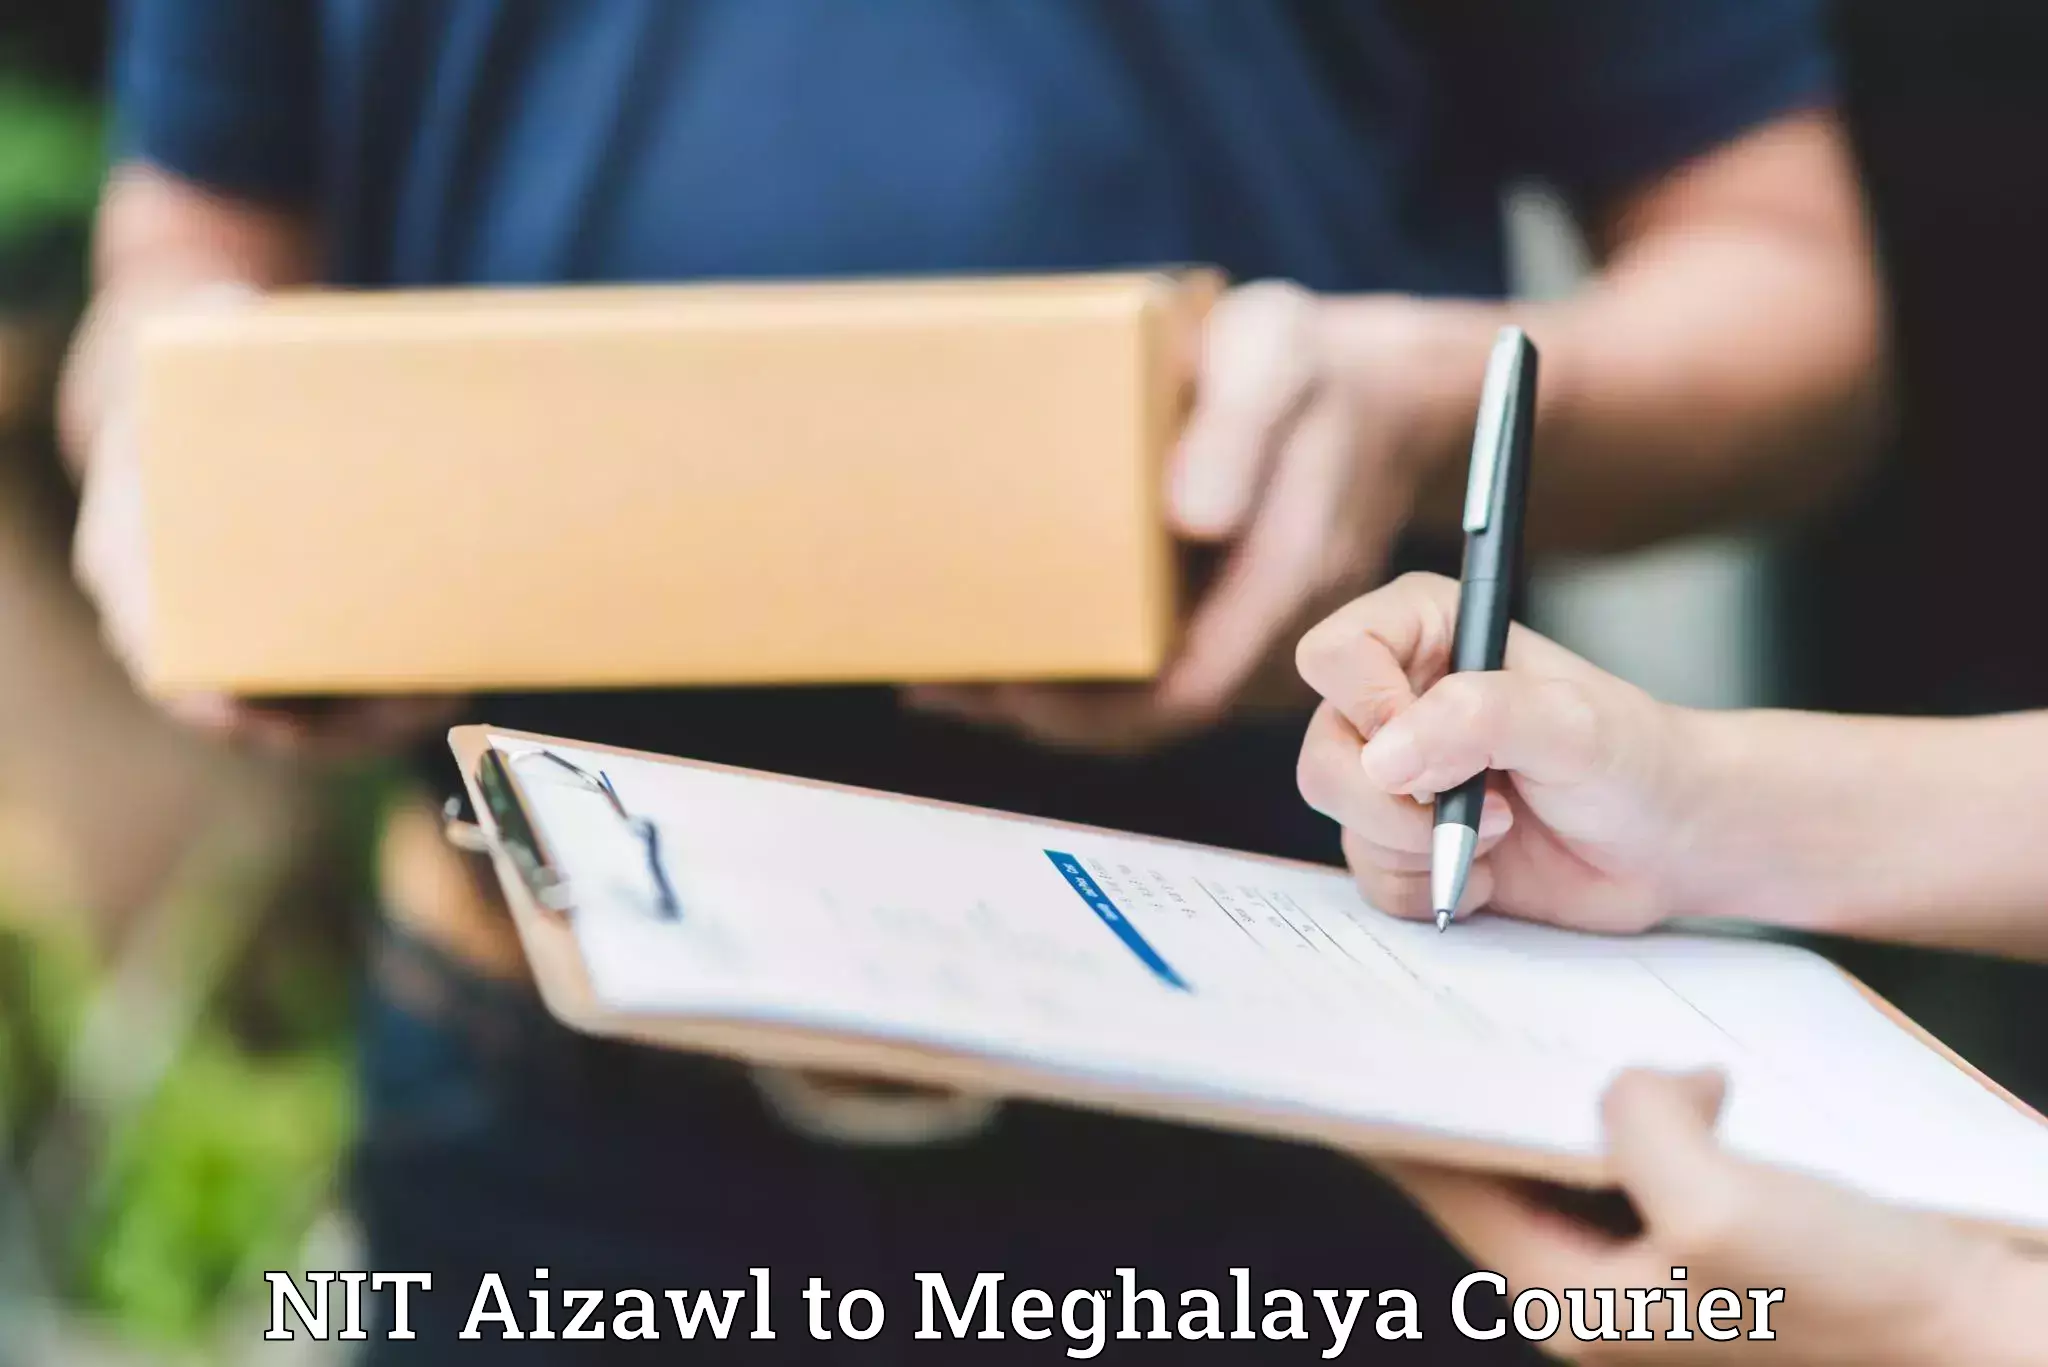 Professional movers NIT Aizawl to Meghalaya